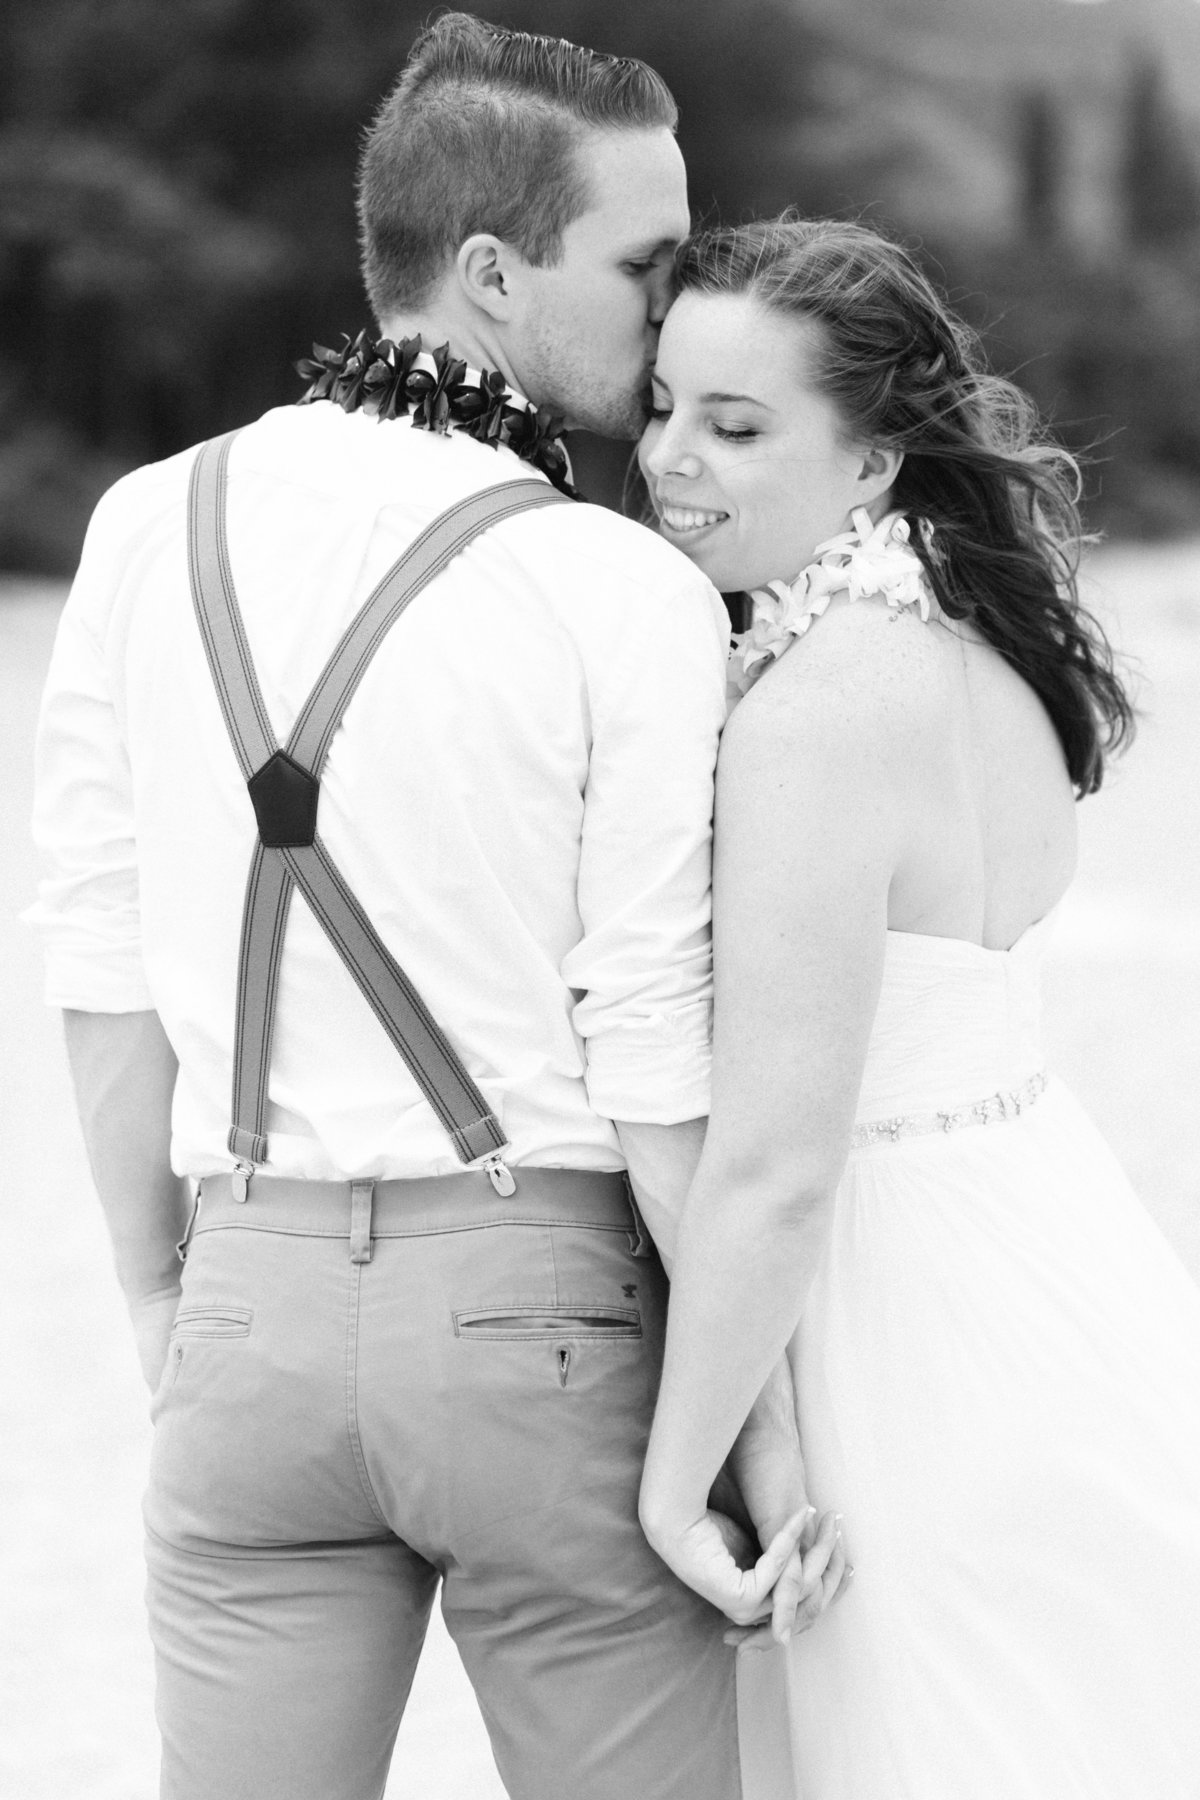 Joel and Kelly-Hawaii Wedding Photographer Samantha Laffoon-3674